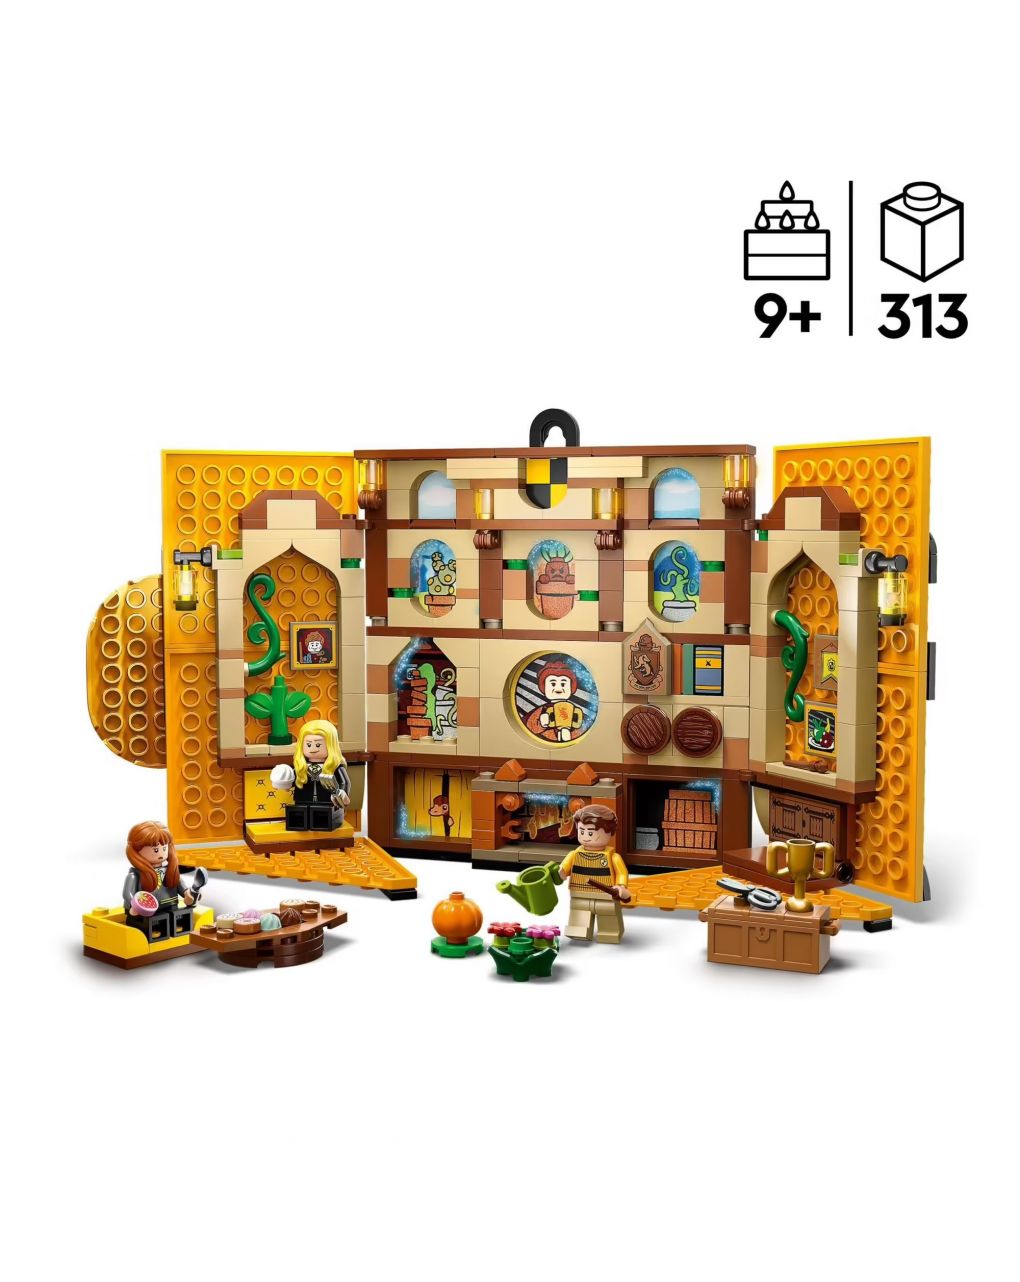 Stendardo della casa tassorosso da parete - sala comune castello di hogwarts 76412 - lego harry potter - LEGO